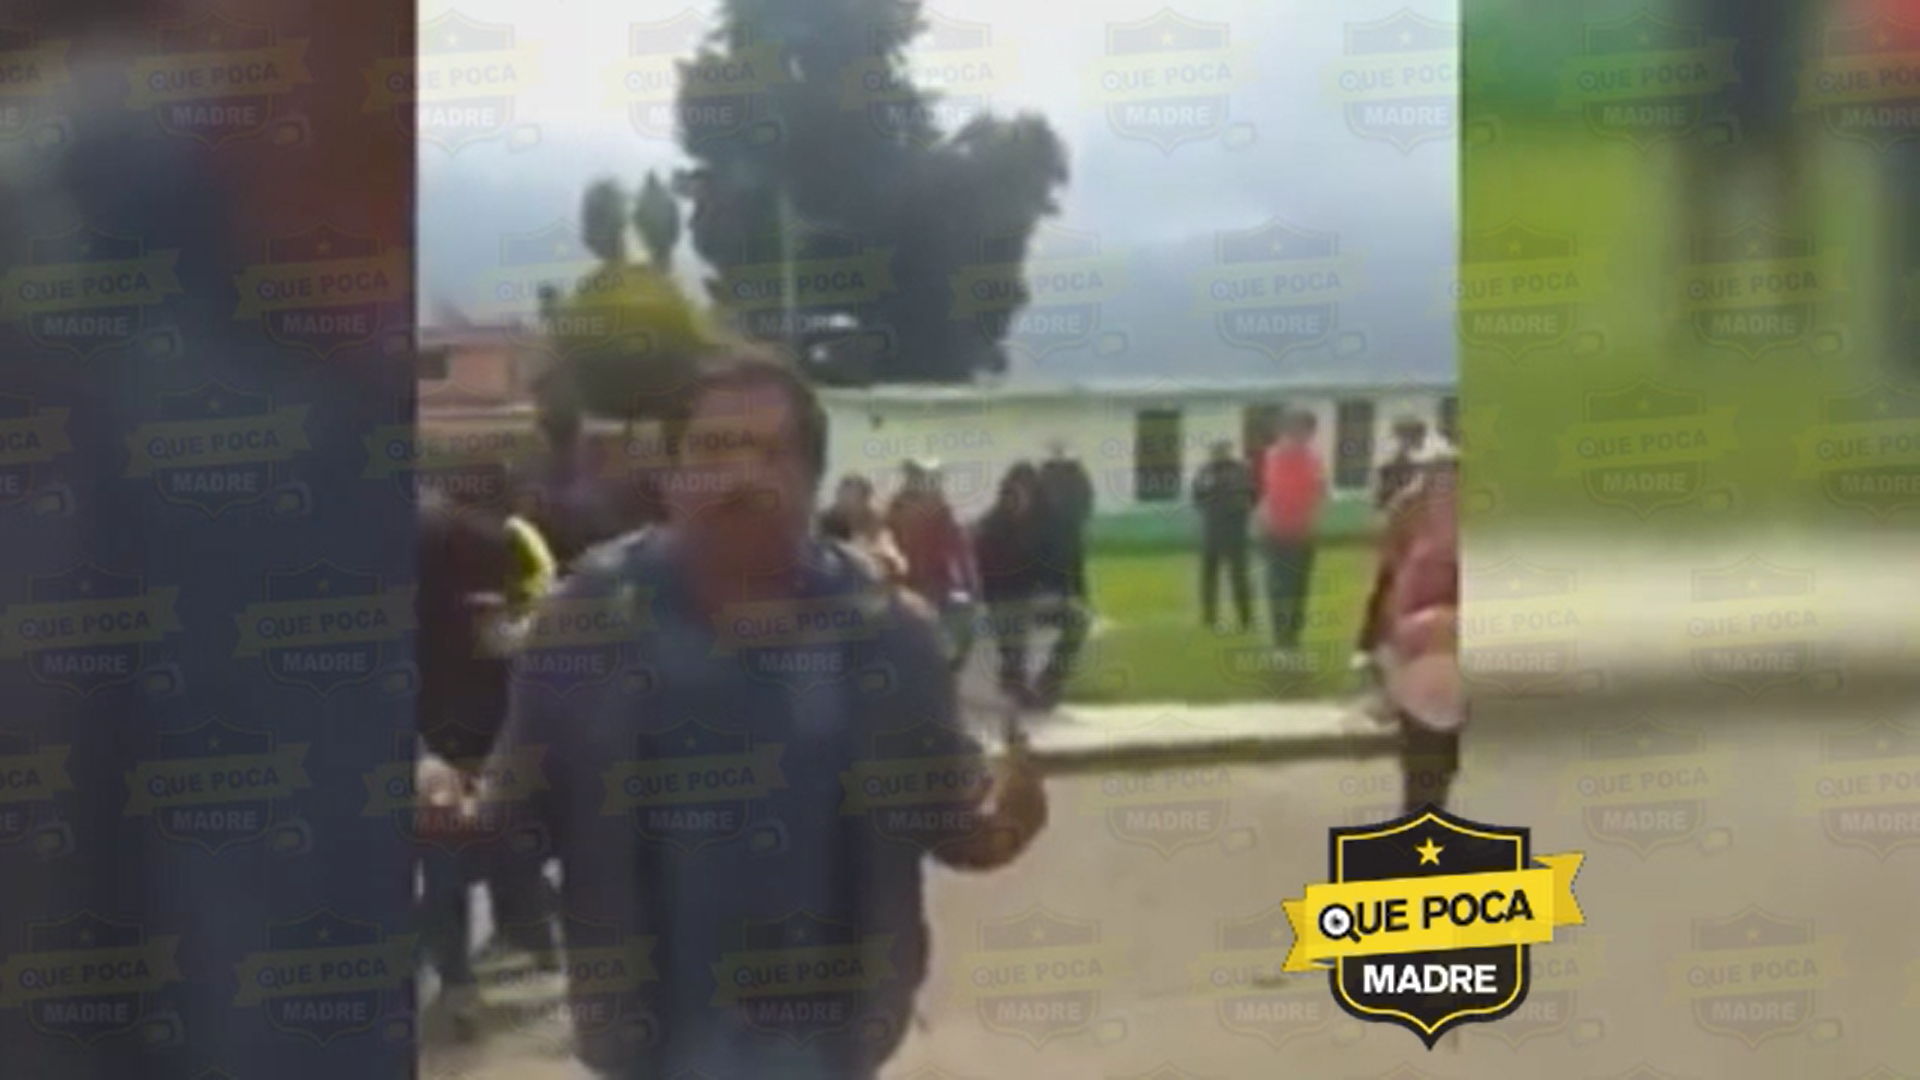 #Video #Capulhuac: Familiares denuncian la muerte de un joven en manos de la #GuardiaNaciona